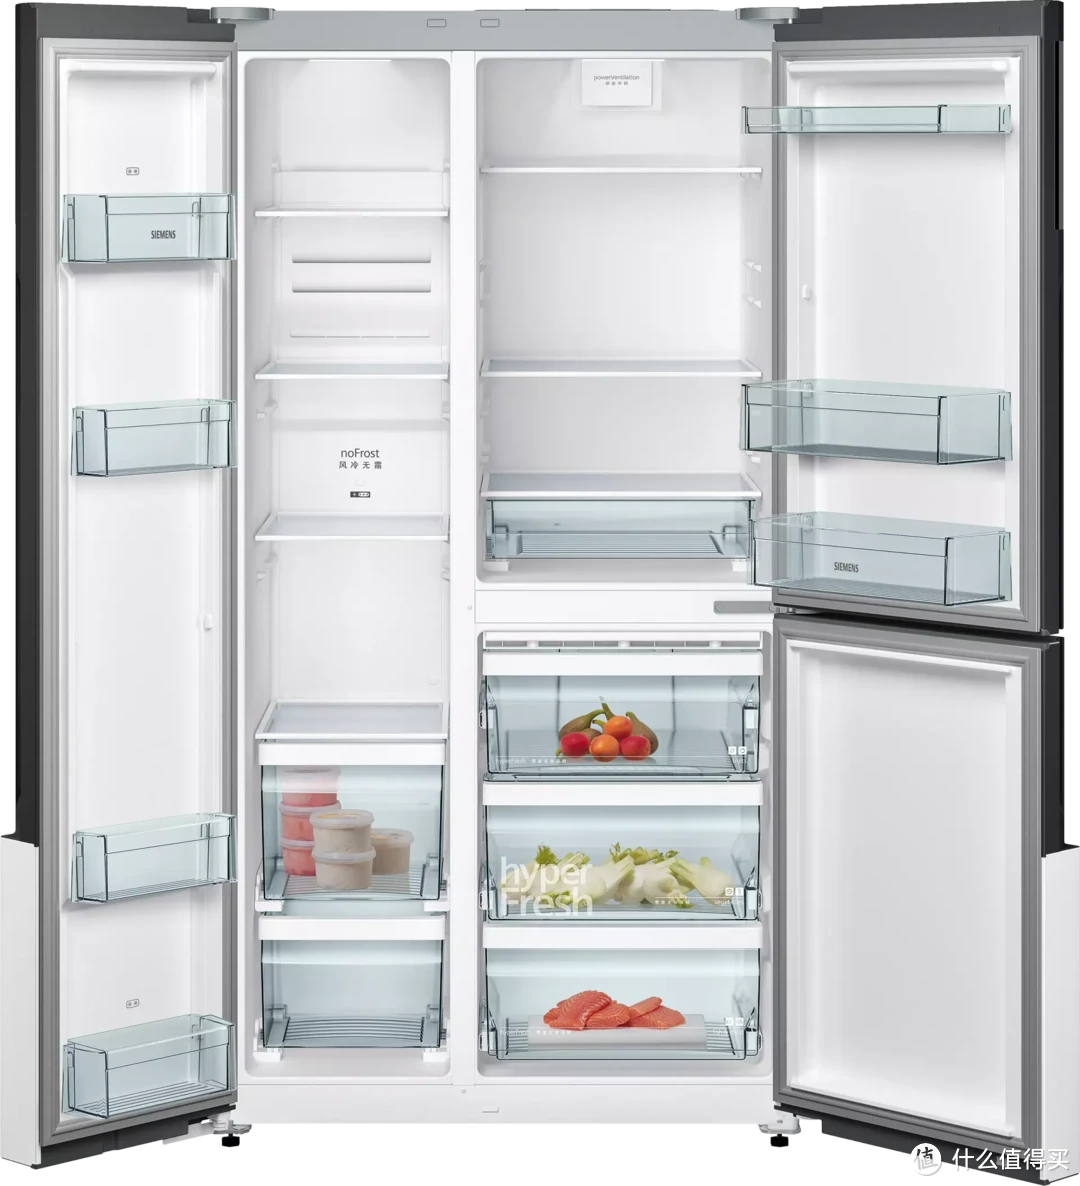 卖点拆分解析，助你选购冰箱--西门子五款不同价位冰箱的解析推荐，找到最适合你的冰箱！